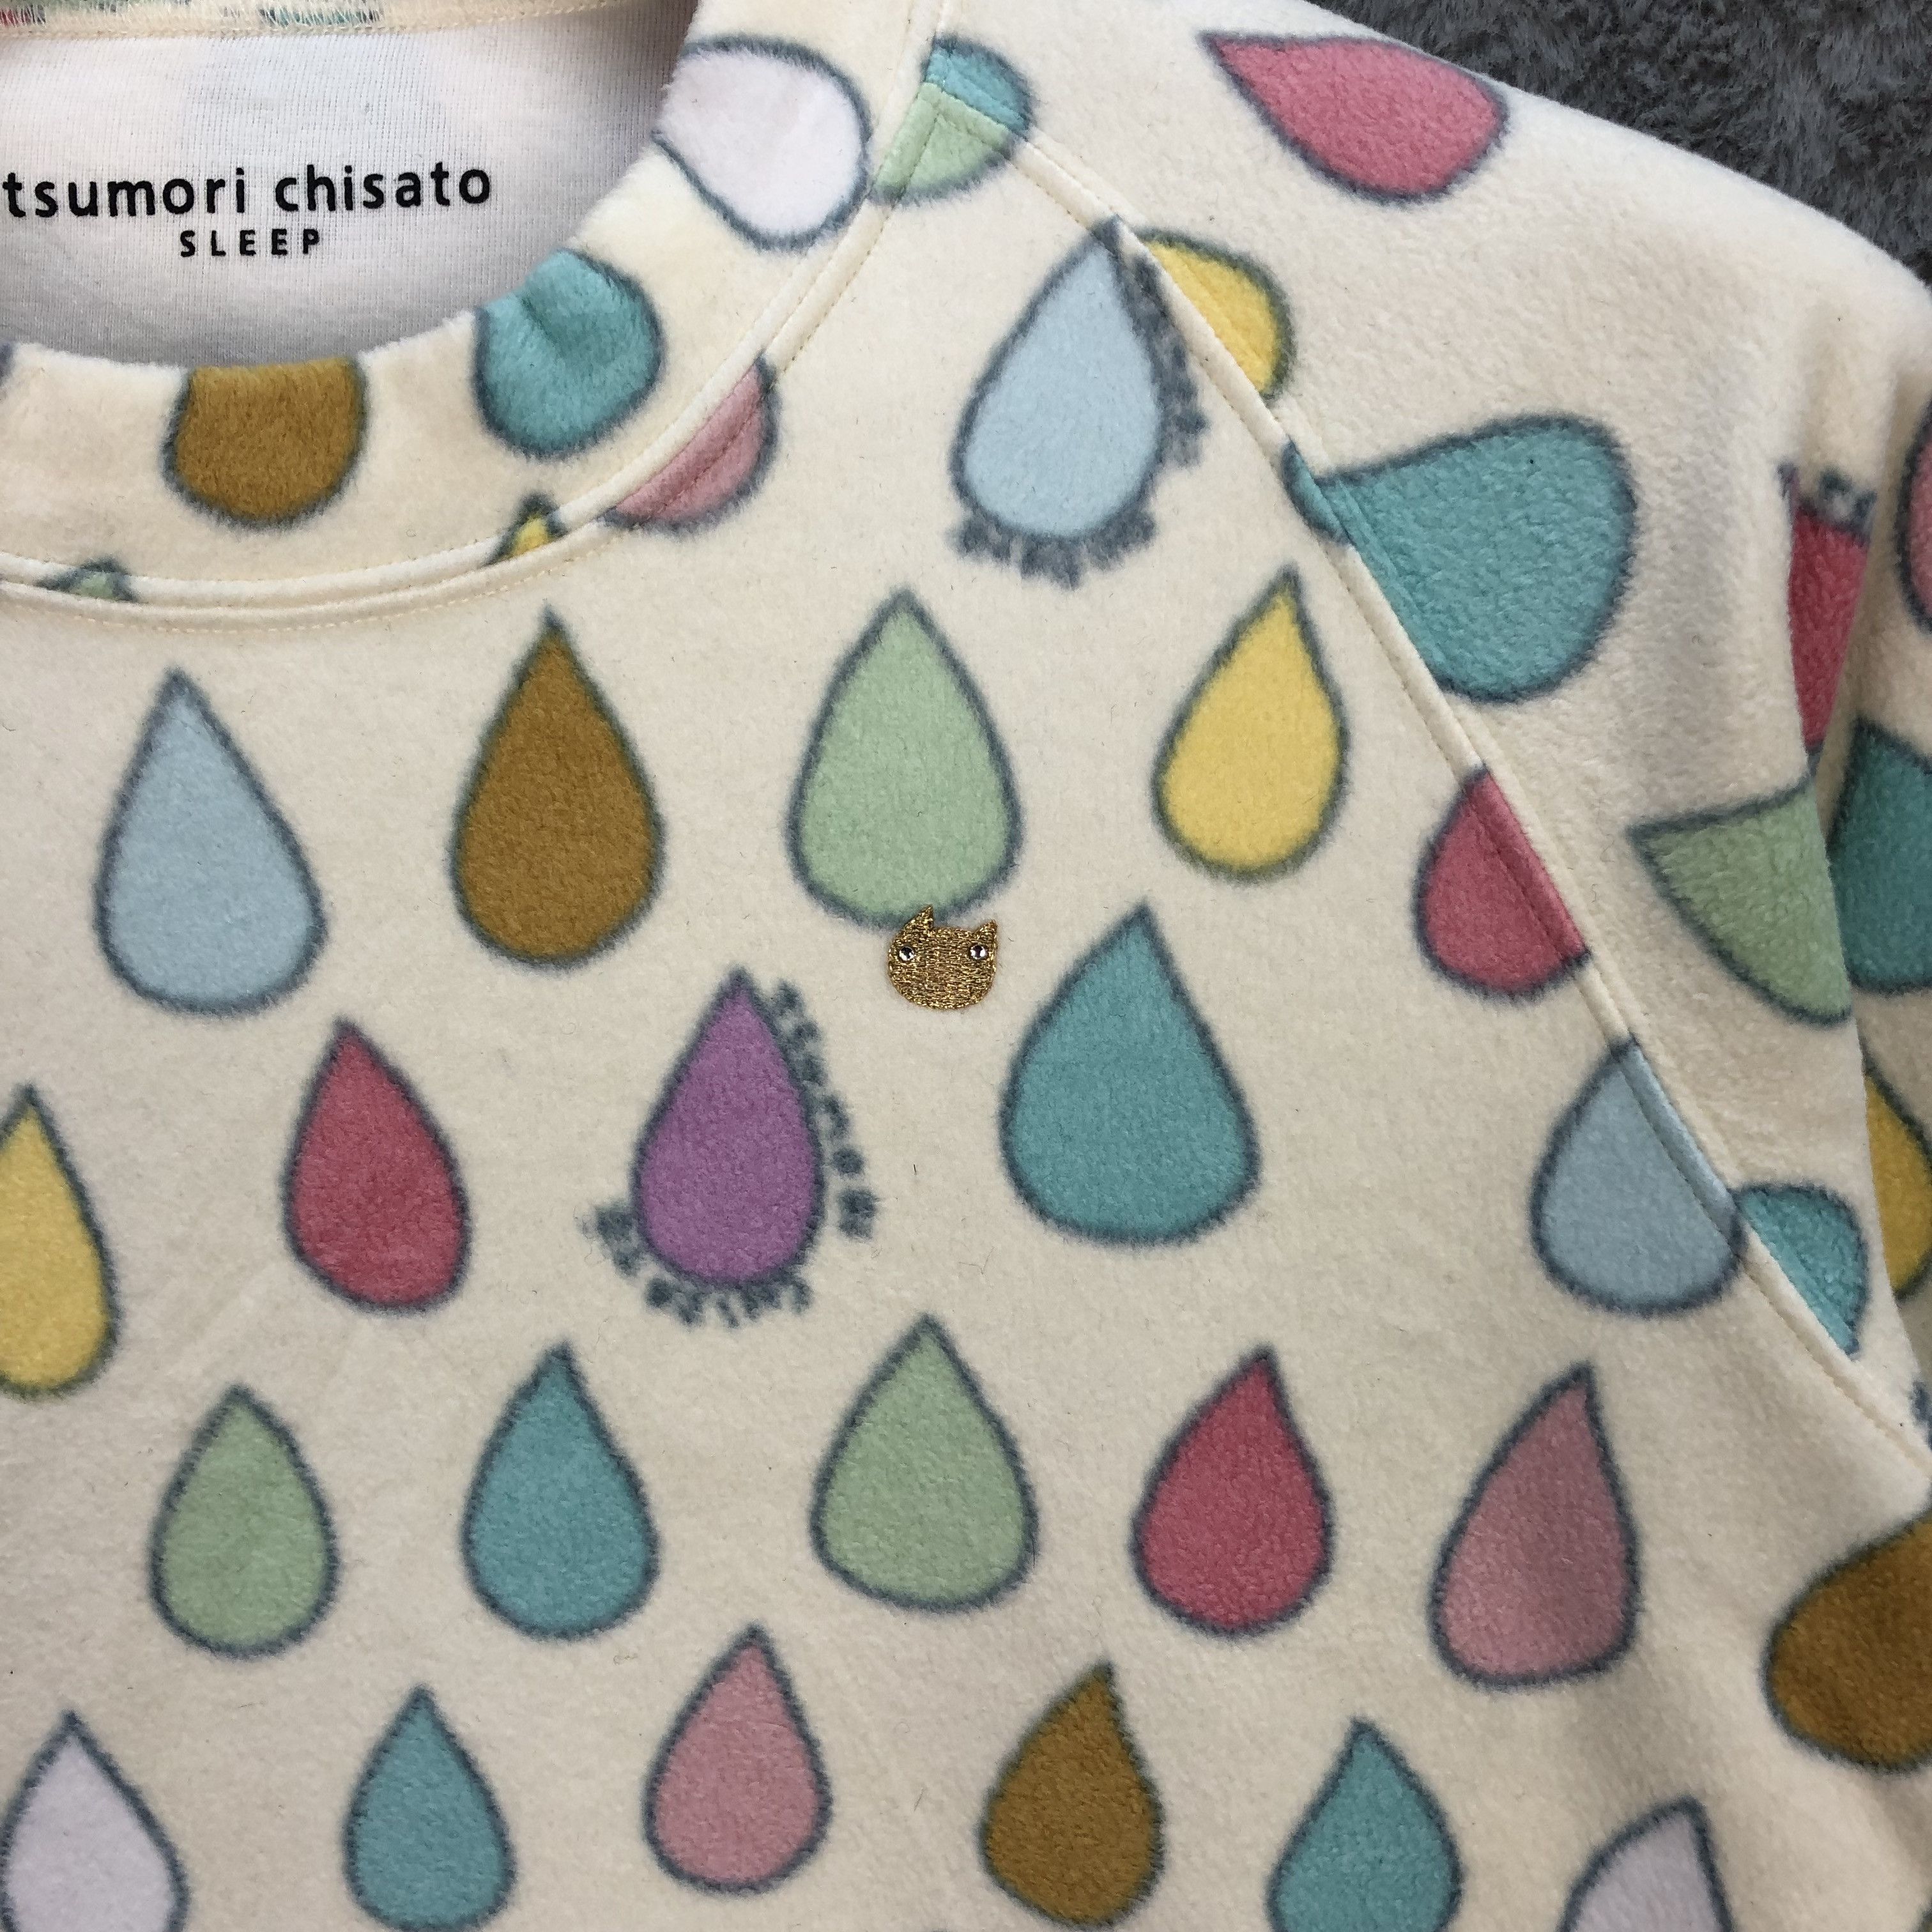 Tsumori Chisato Sleep Water Drop Fleece Sweatshirt #5683-202 - 3